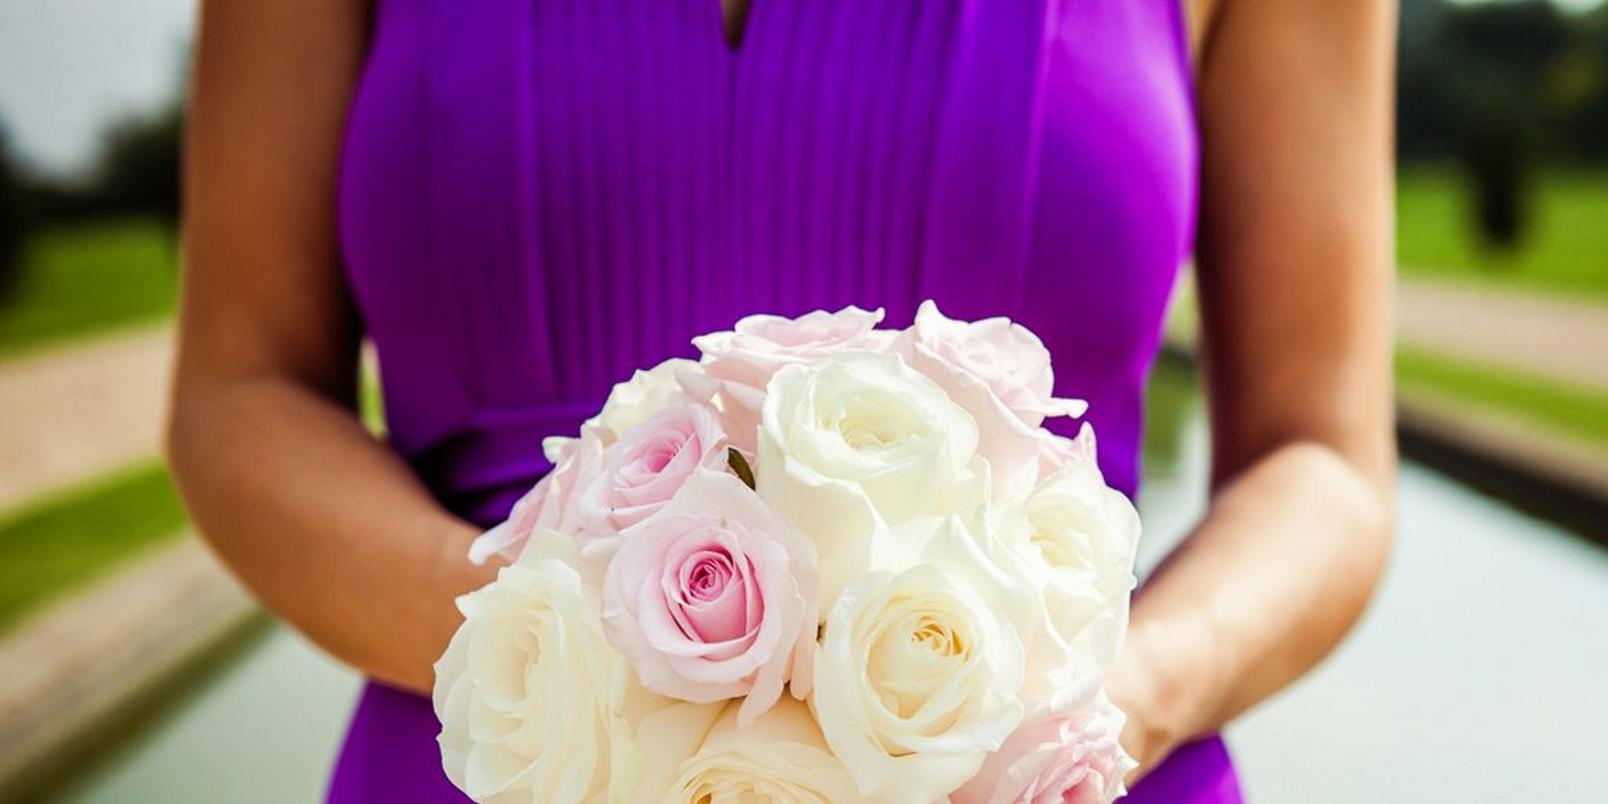 pastel-rose-bridal-bouquet-purple-dress